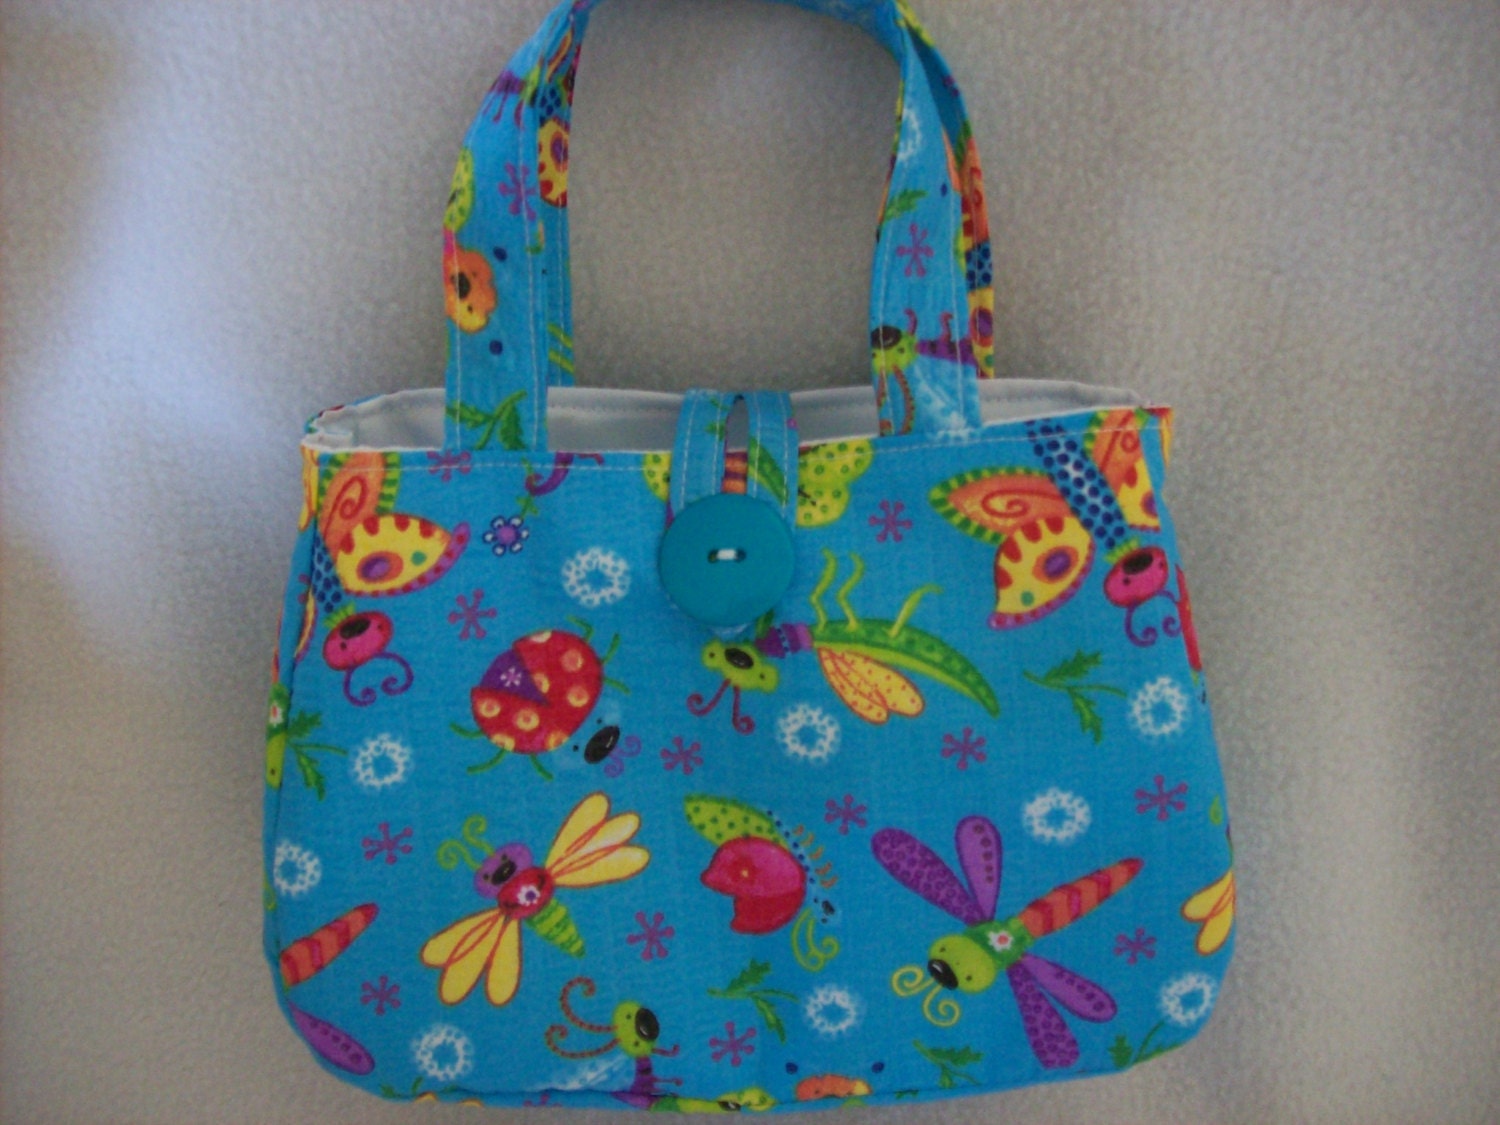 Little Girls Handbag in Cute Little summer bugs print Blue